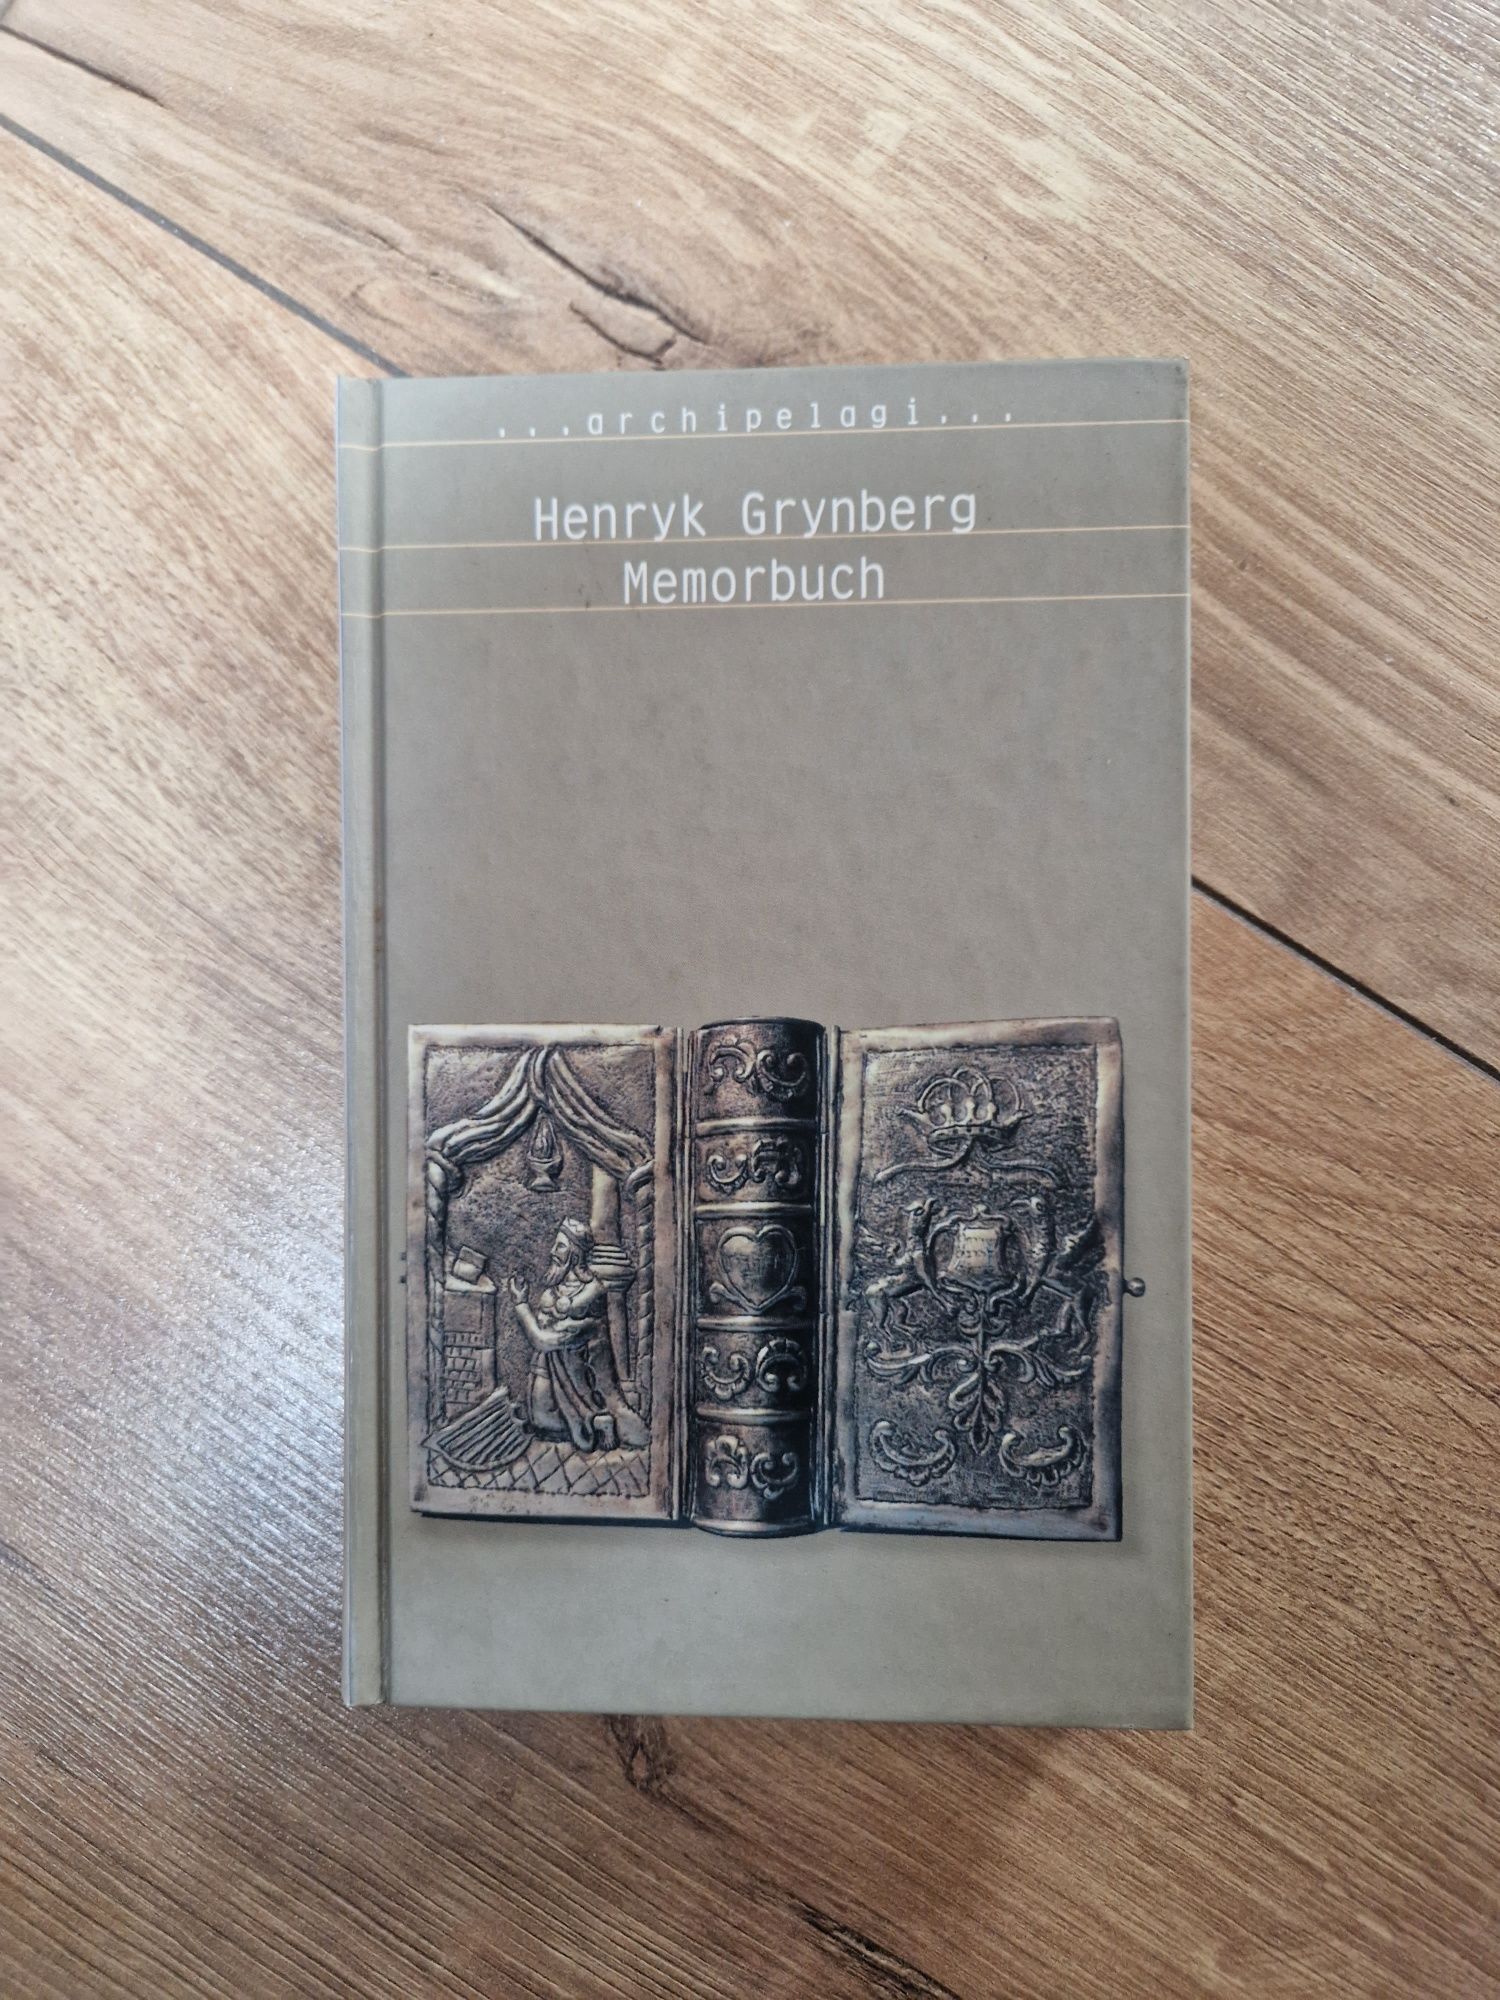 Grynberg, Memorbuch